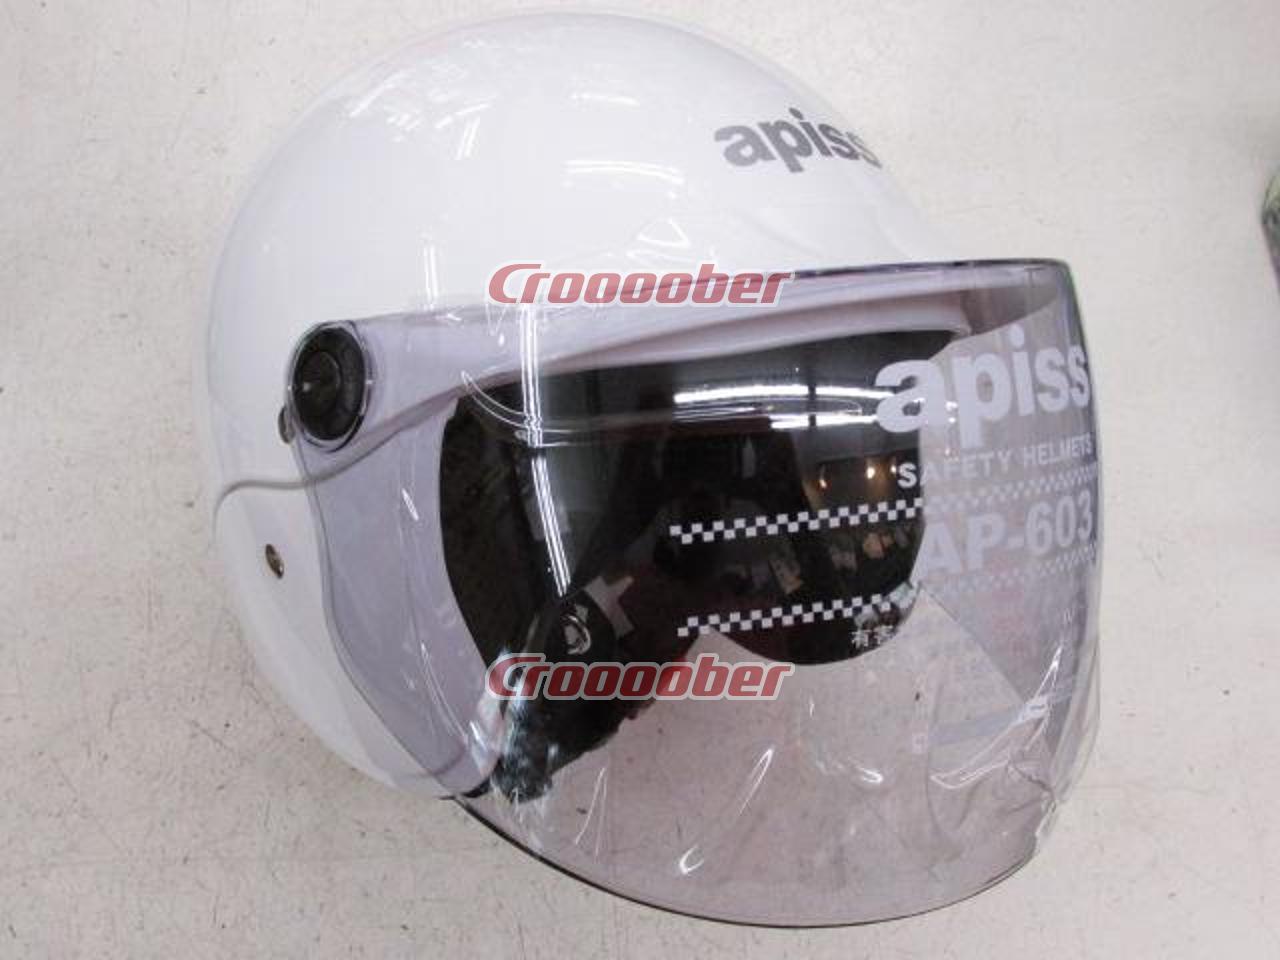 LEAD(リード) apissセミジェット(AP-603) WH | ヘルメット ジェットヘルメット(二輪)パーツの通販なら |  Croooober(クルーバー)